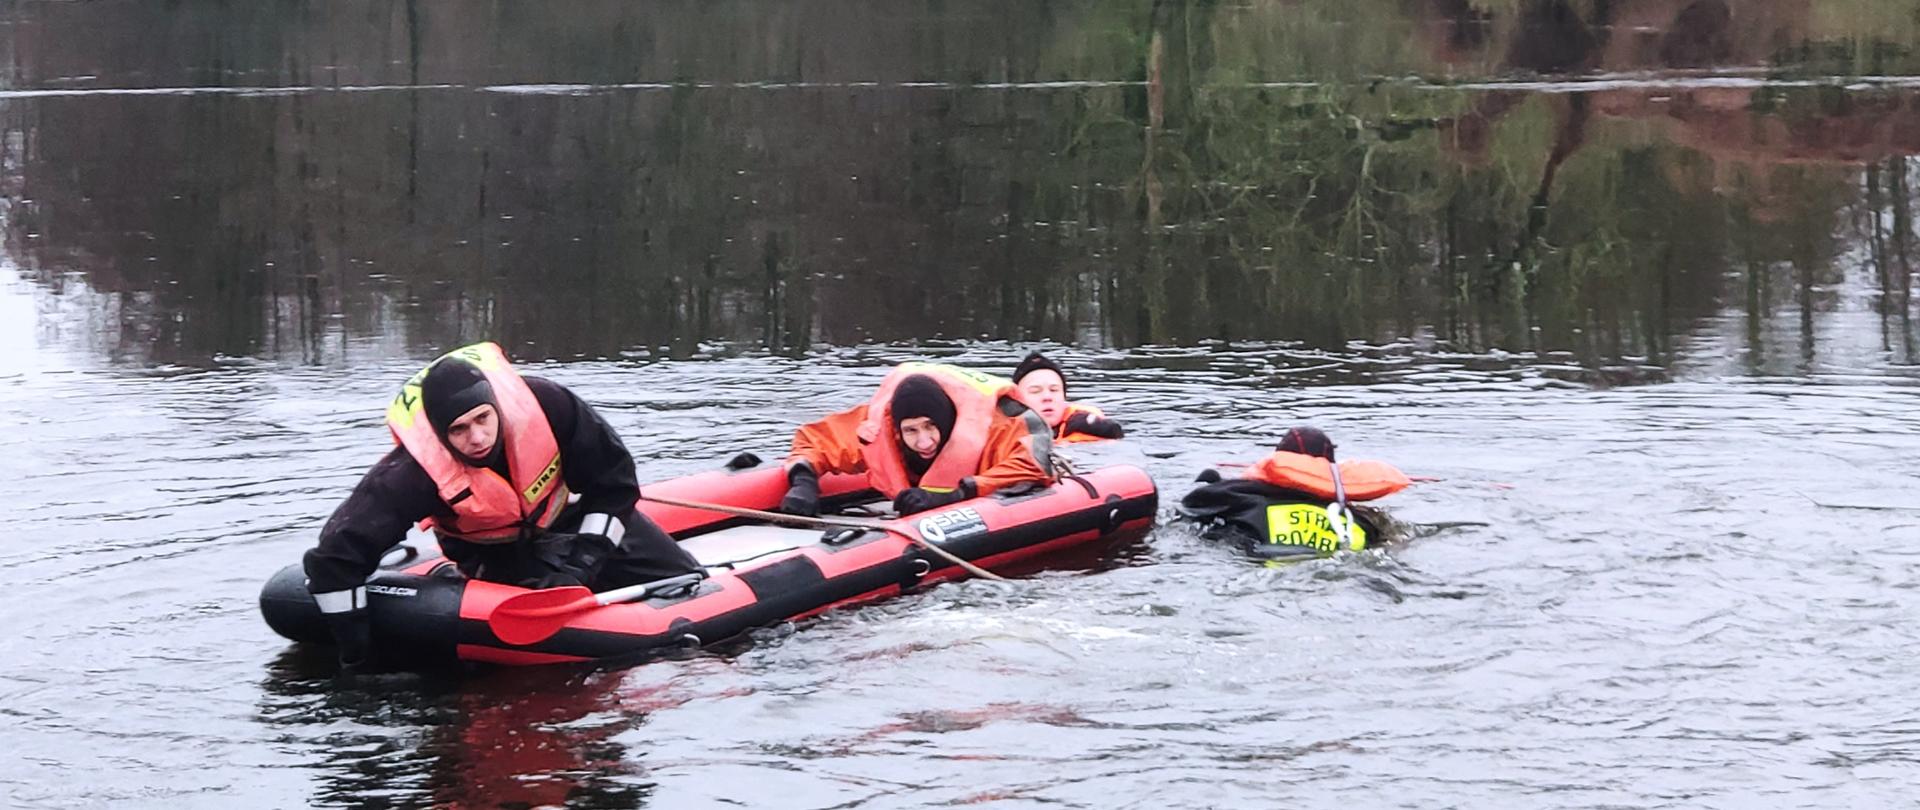 Na rozmarzającej tafli jeziora utrzymuje się w wodzie jedna osoba, w jej kierunku na desce lodowej płynie trzech ratowników w kamizelkazach z napisem STRAŻ na plecach.